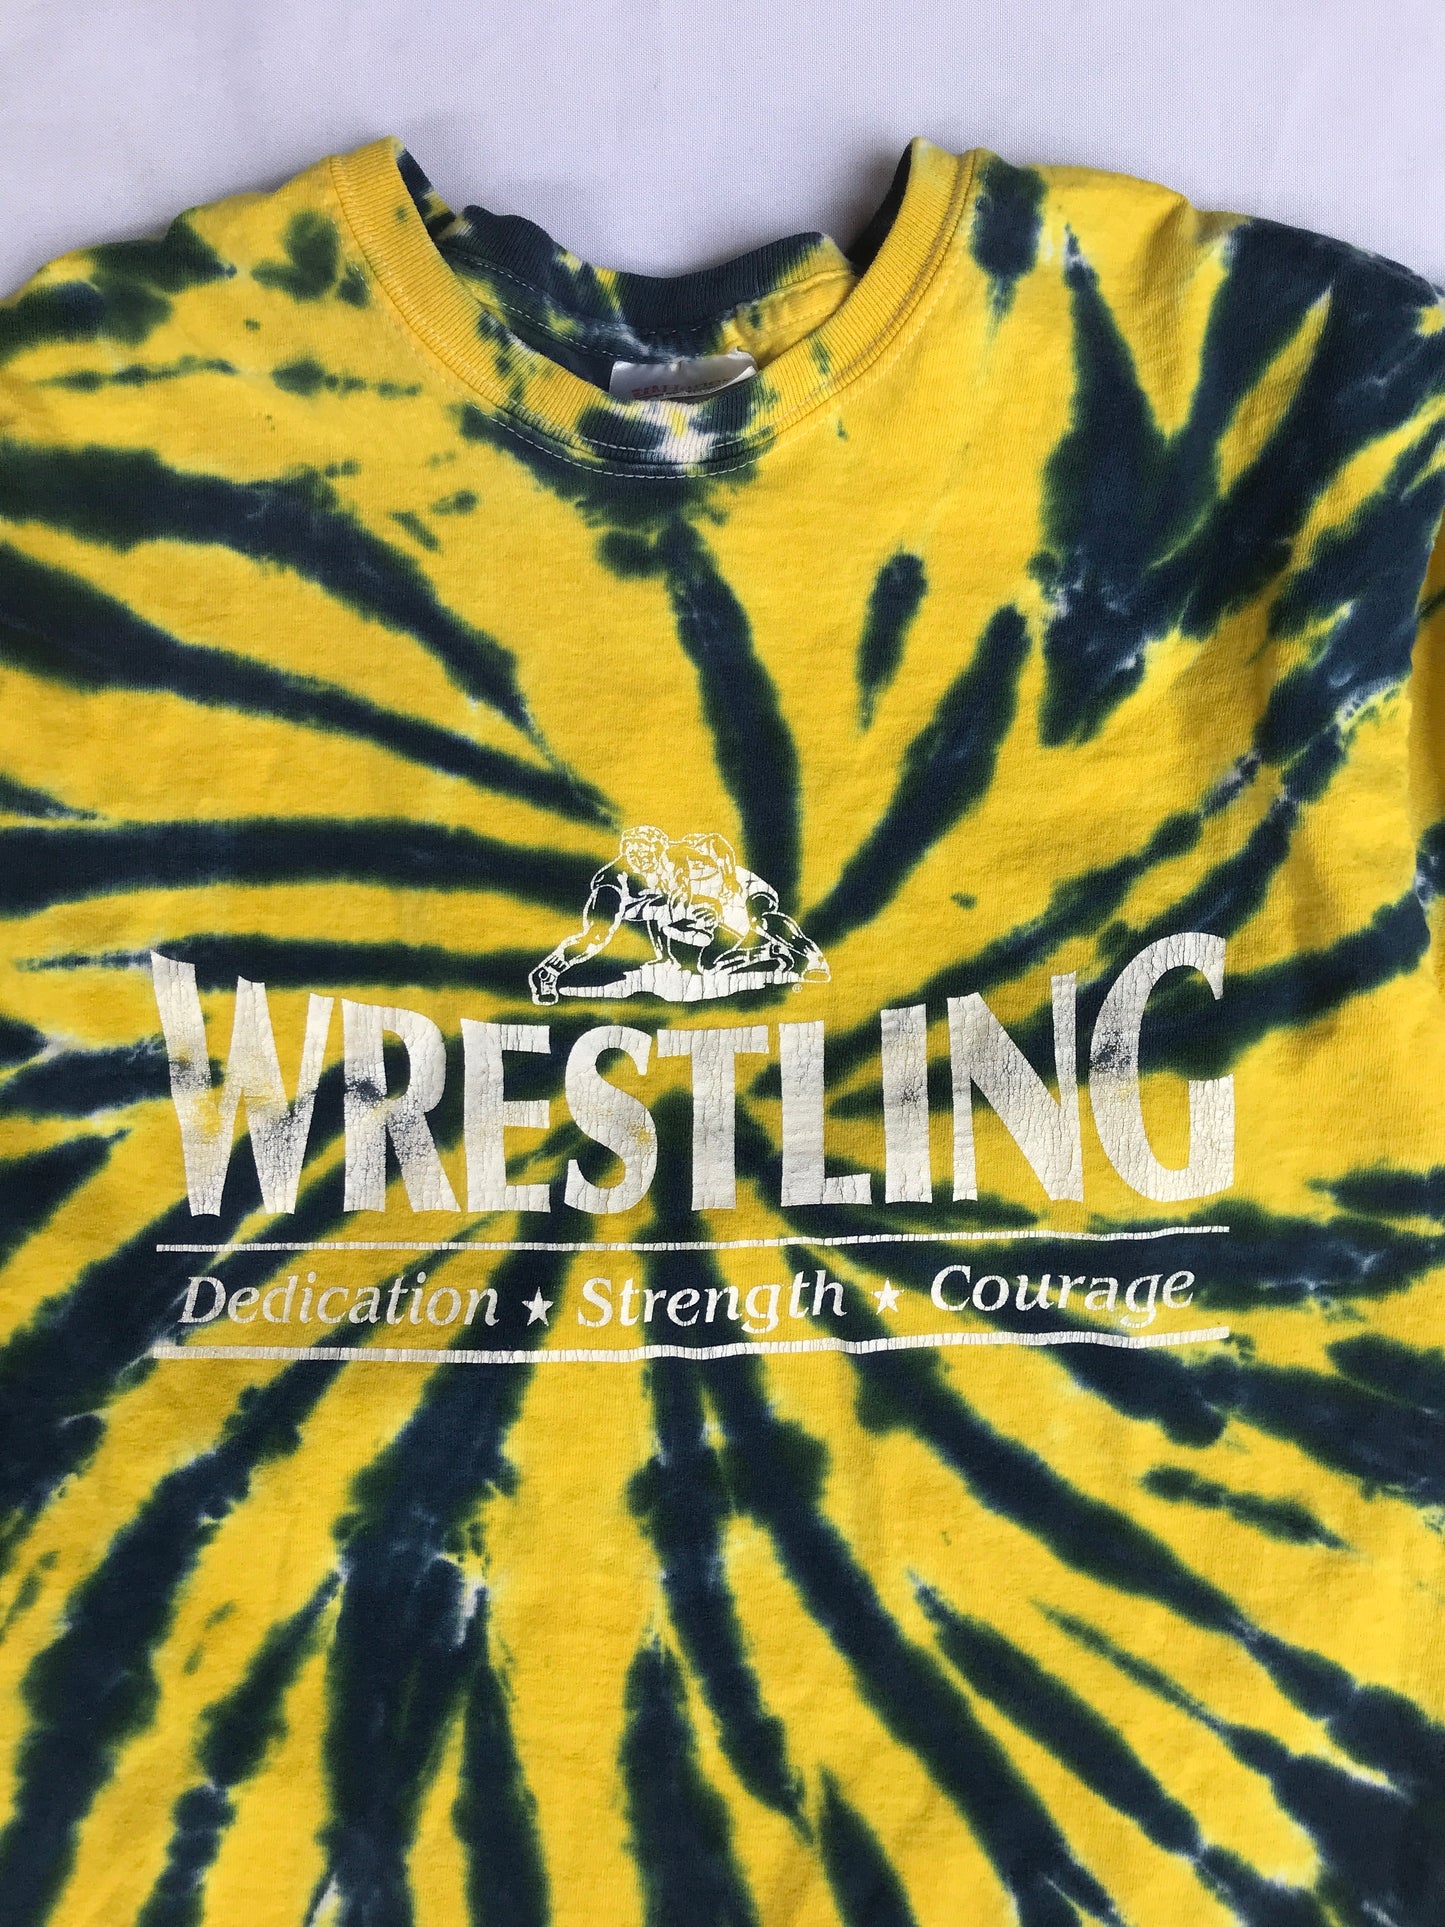 Vintage Wrestling T-shirt